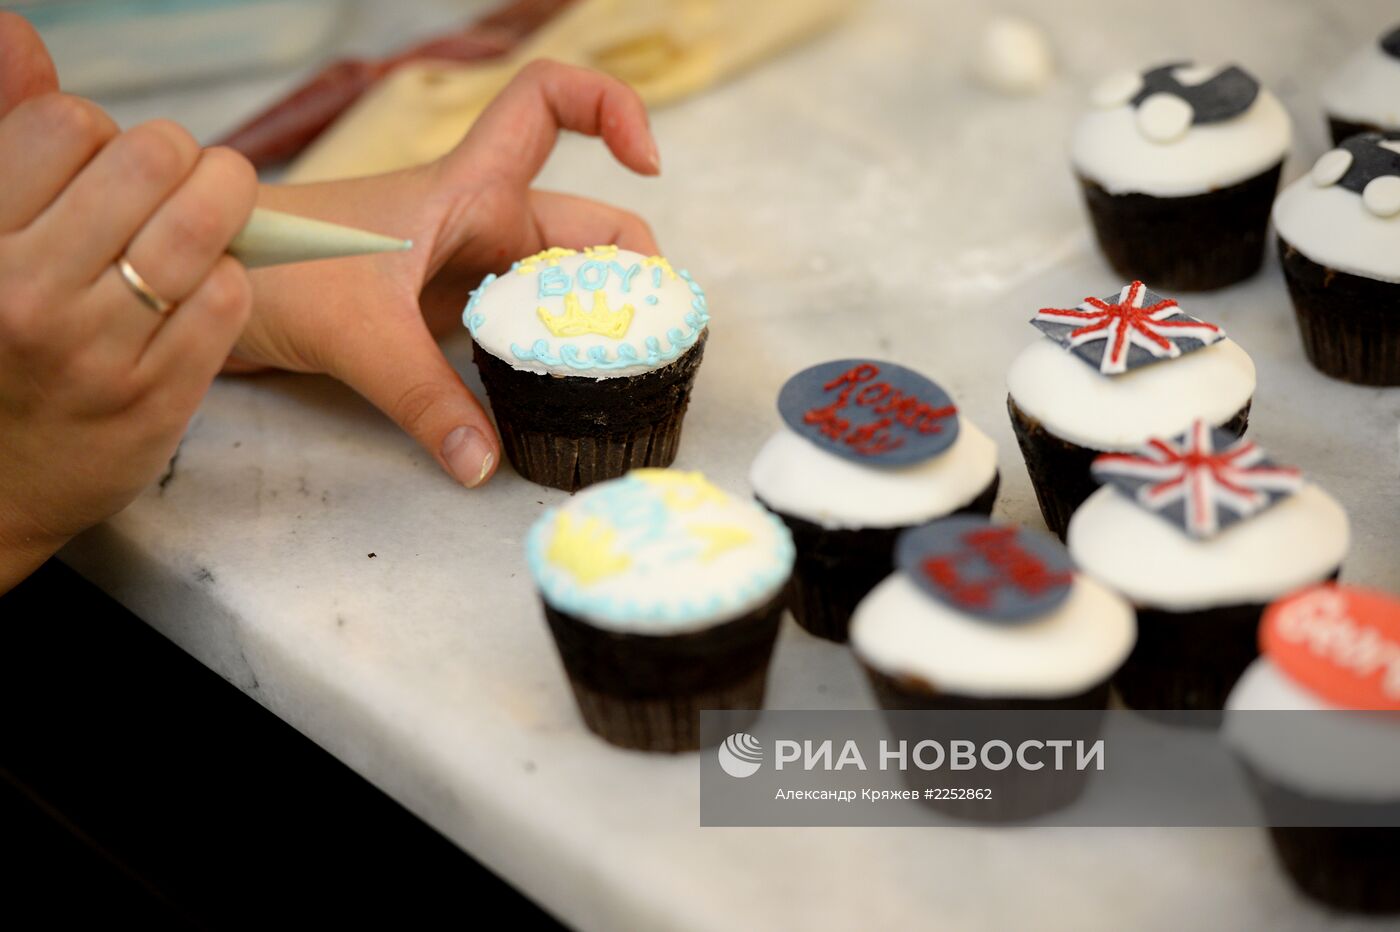 Производство тортов по случаю рождения принца Джорджа